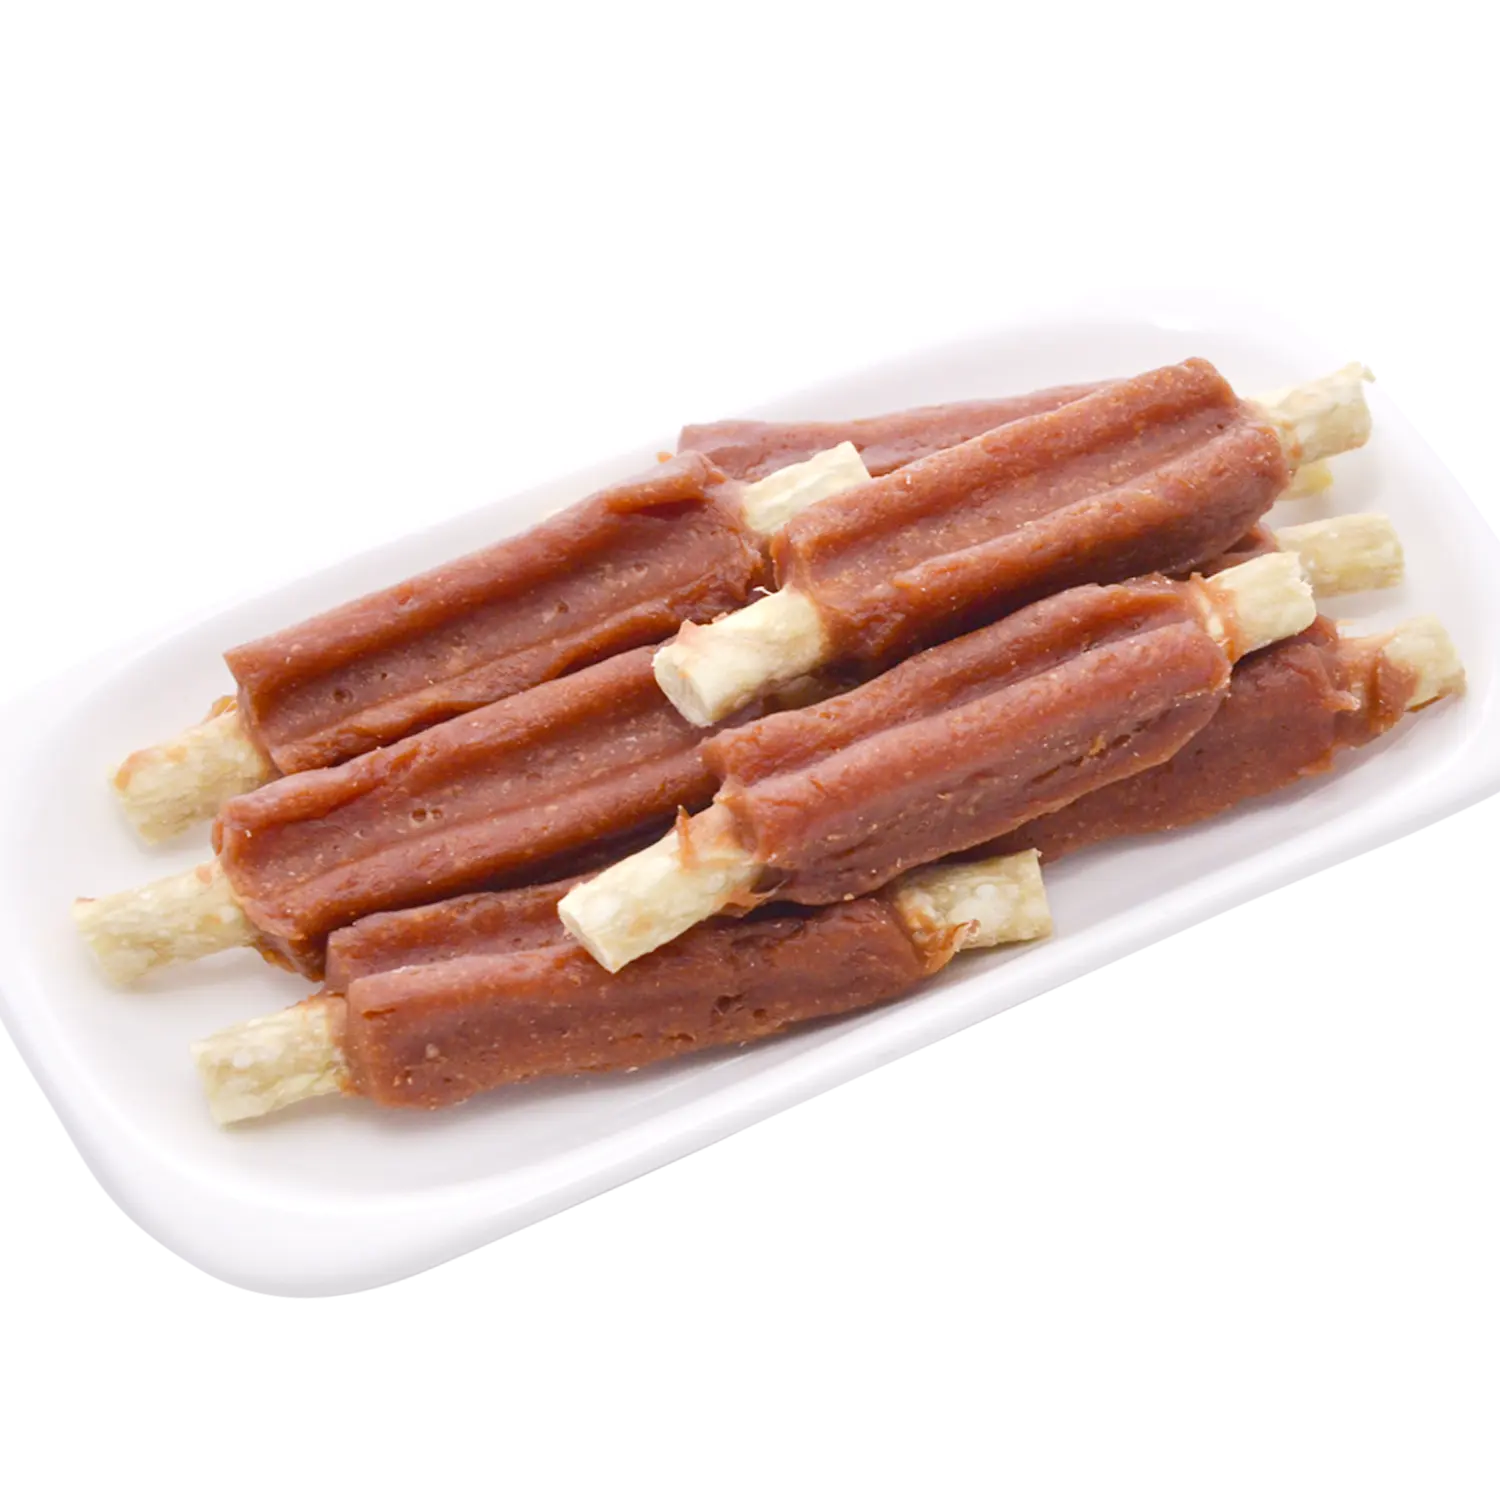 पालतू स्नैक्स कुत्ते का प्राकृतिक सूखा भोजन मेमना पट्टी कुत्ता चबाने वाला स्नैक्स स्वस्थ कुत्ते का इलाज